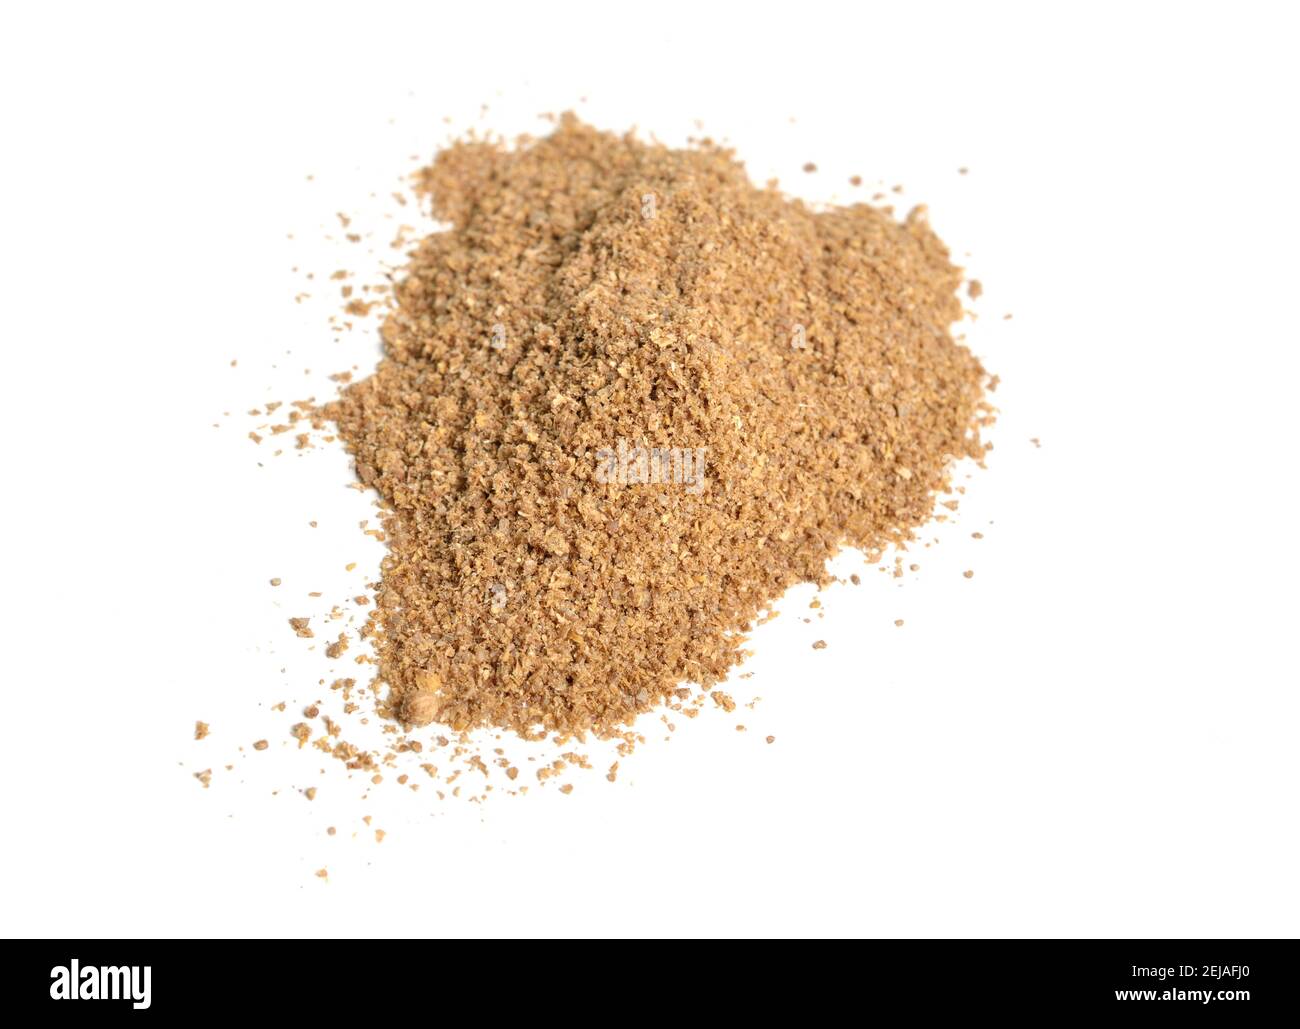 Poudre de graines de coriandre. Il est également connu sous le nom de persil chinois, dhania ou coriandre. Isolé. Banque D'Images